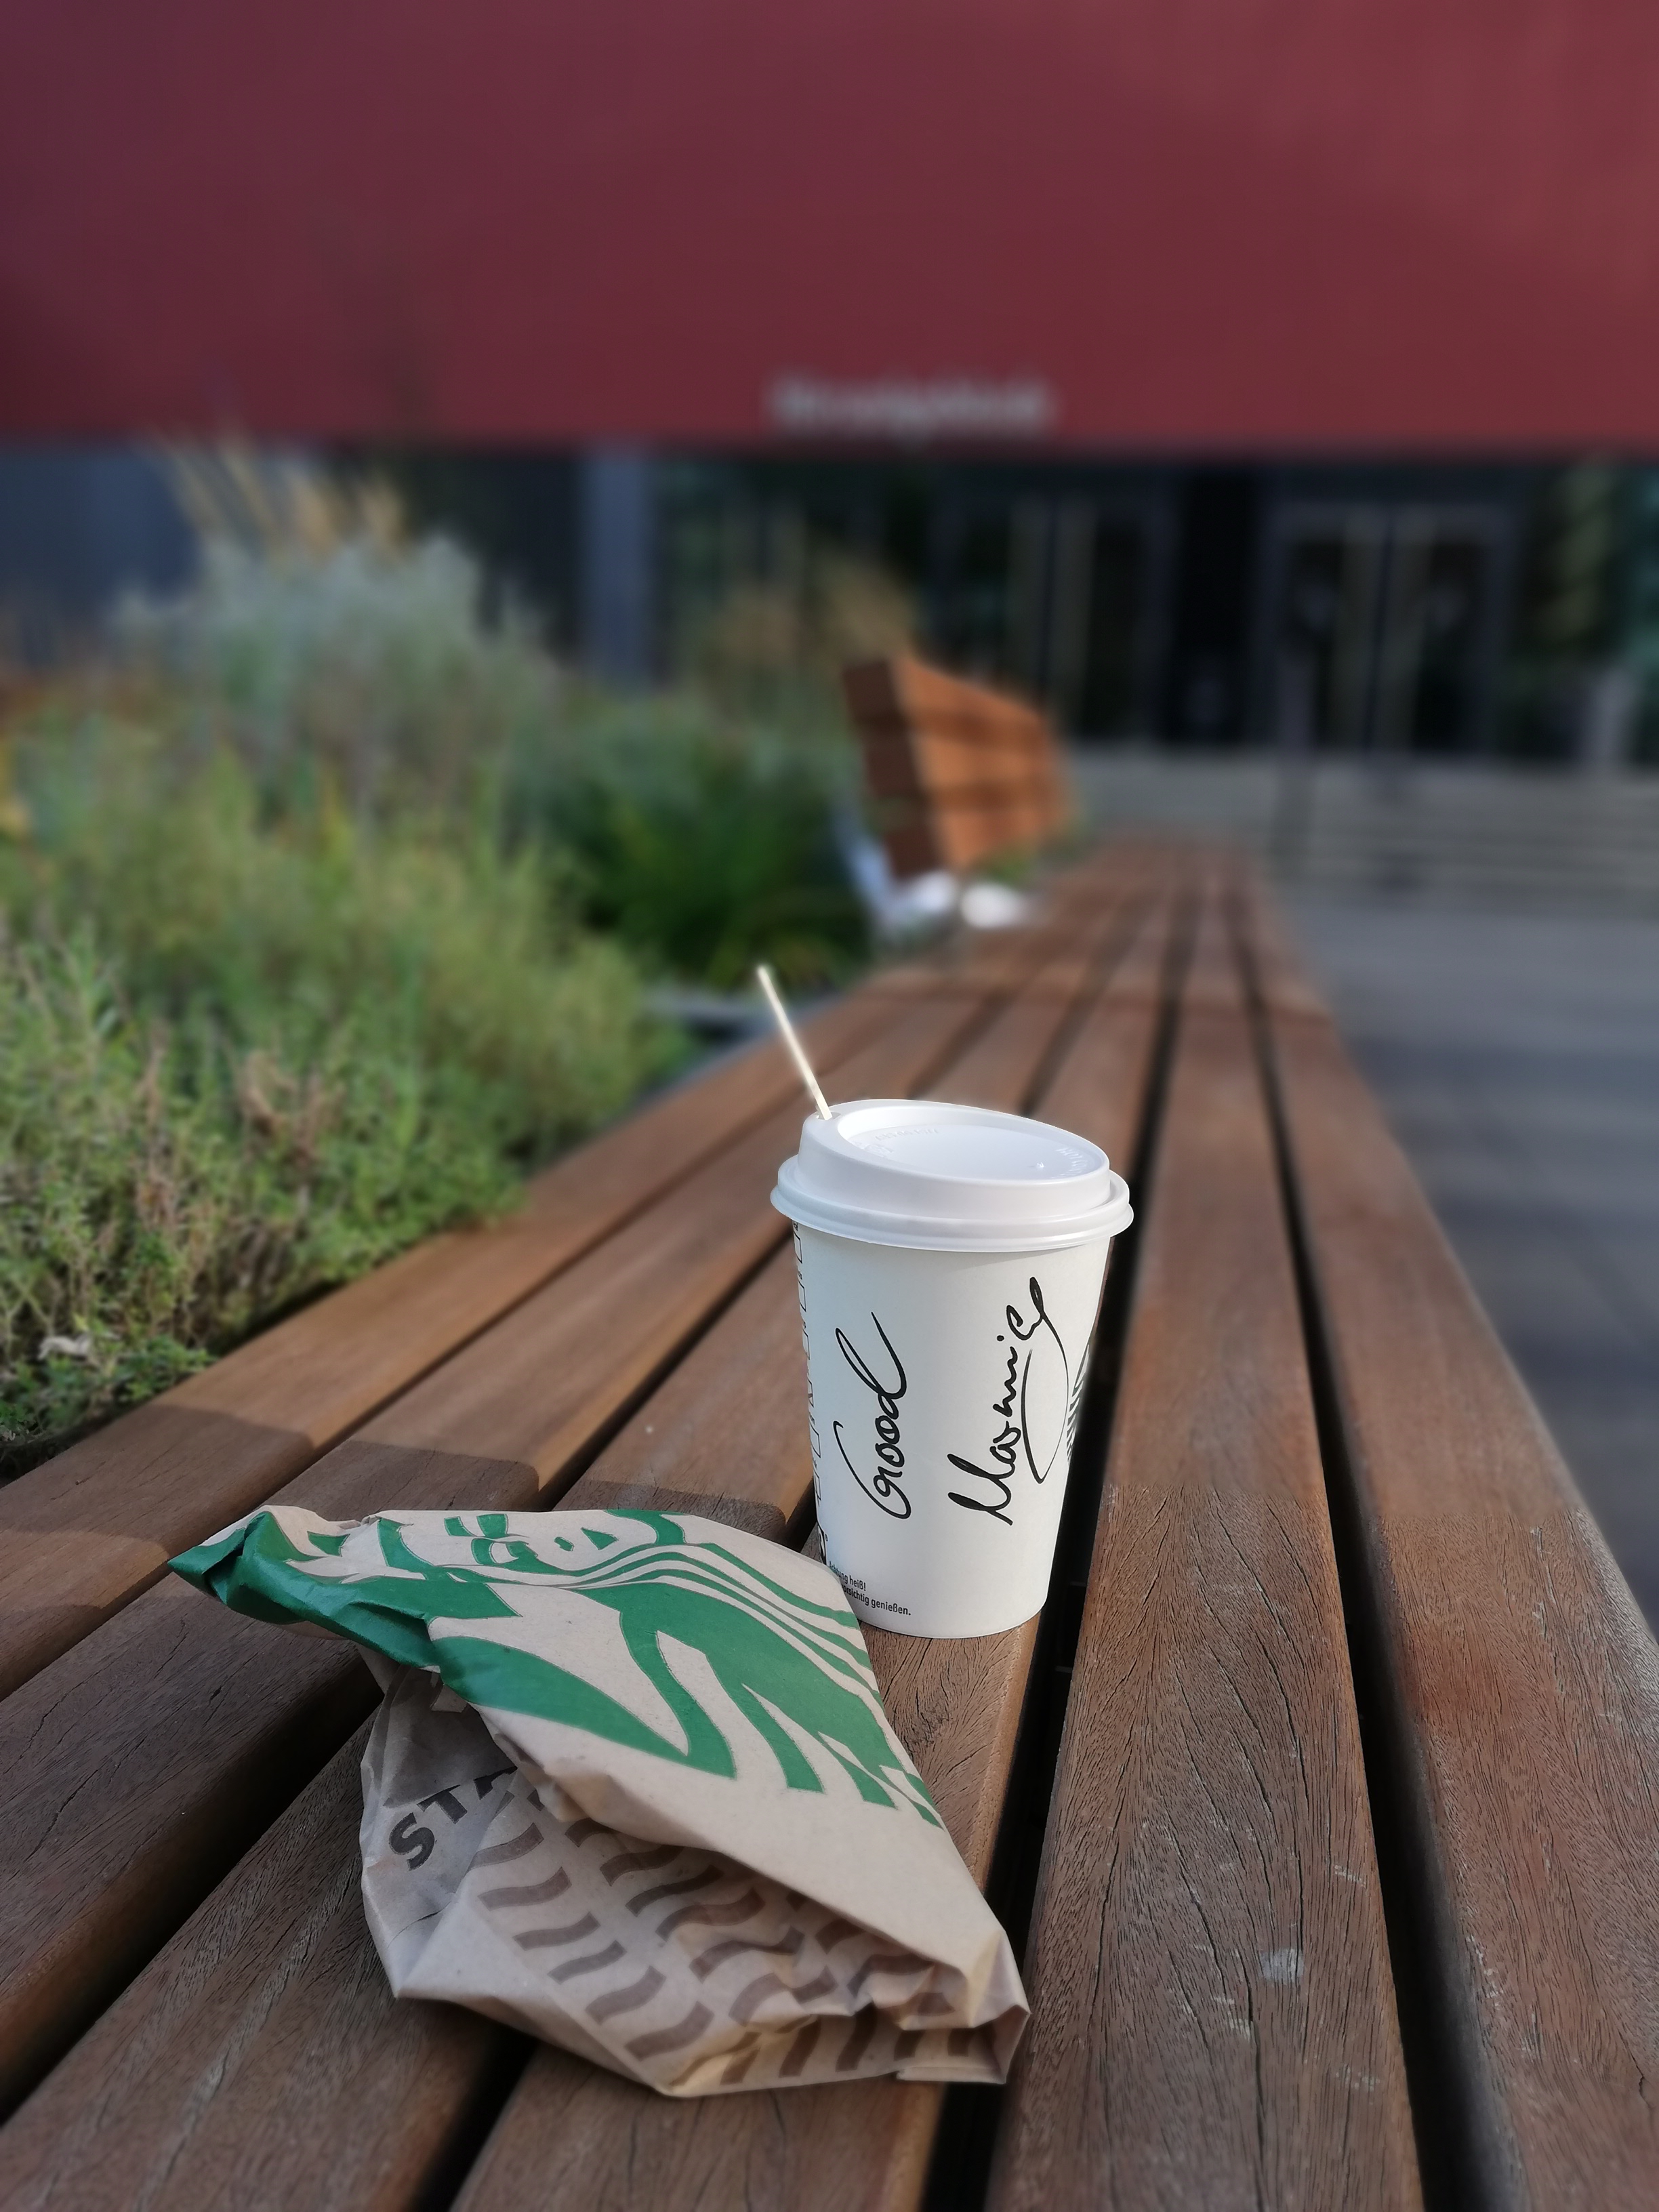 Starbucks reggeli a Lipcsei Egyetem udvarában